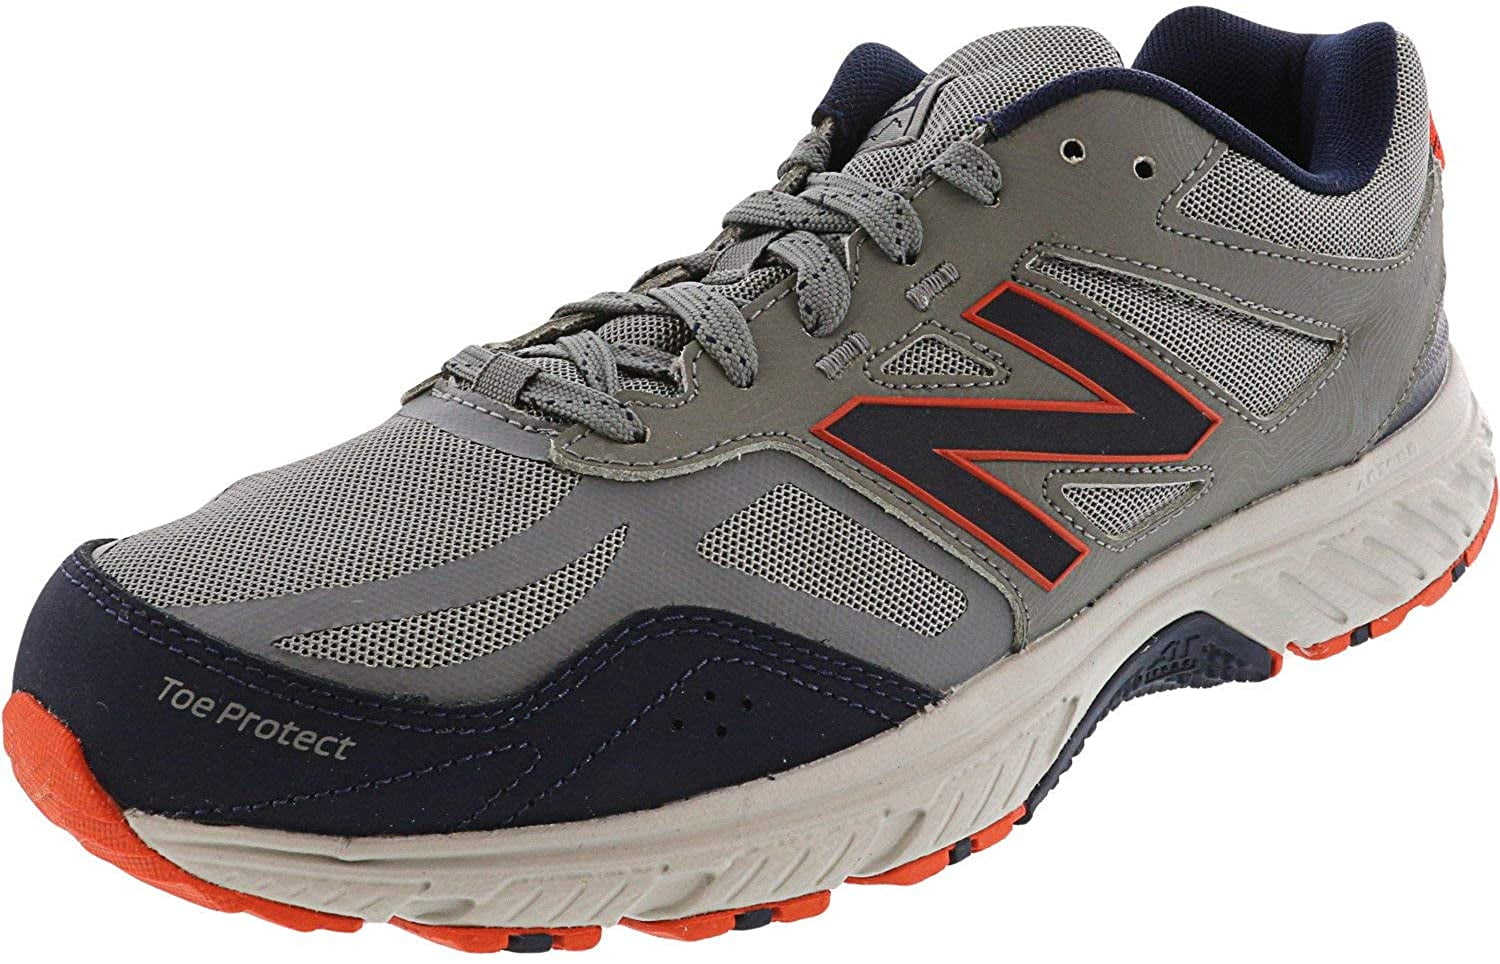 510 v4 trail running shoe